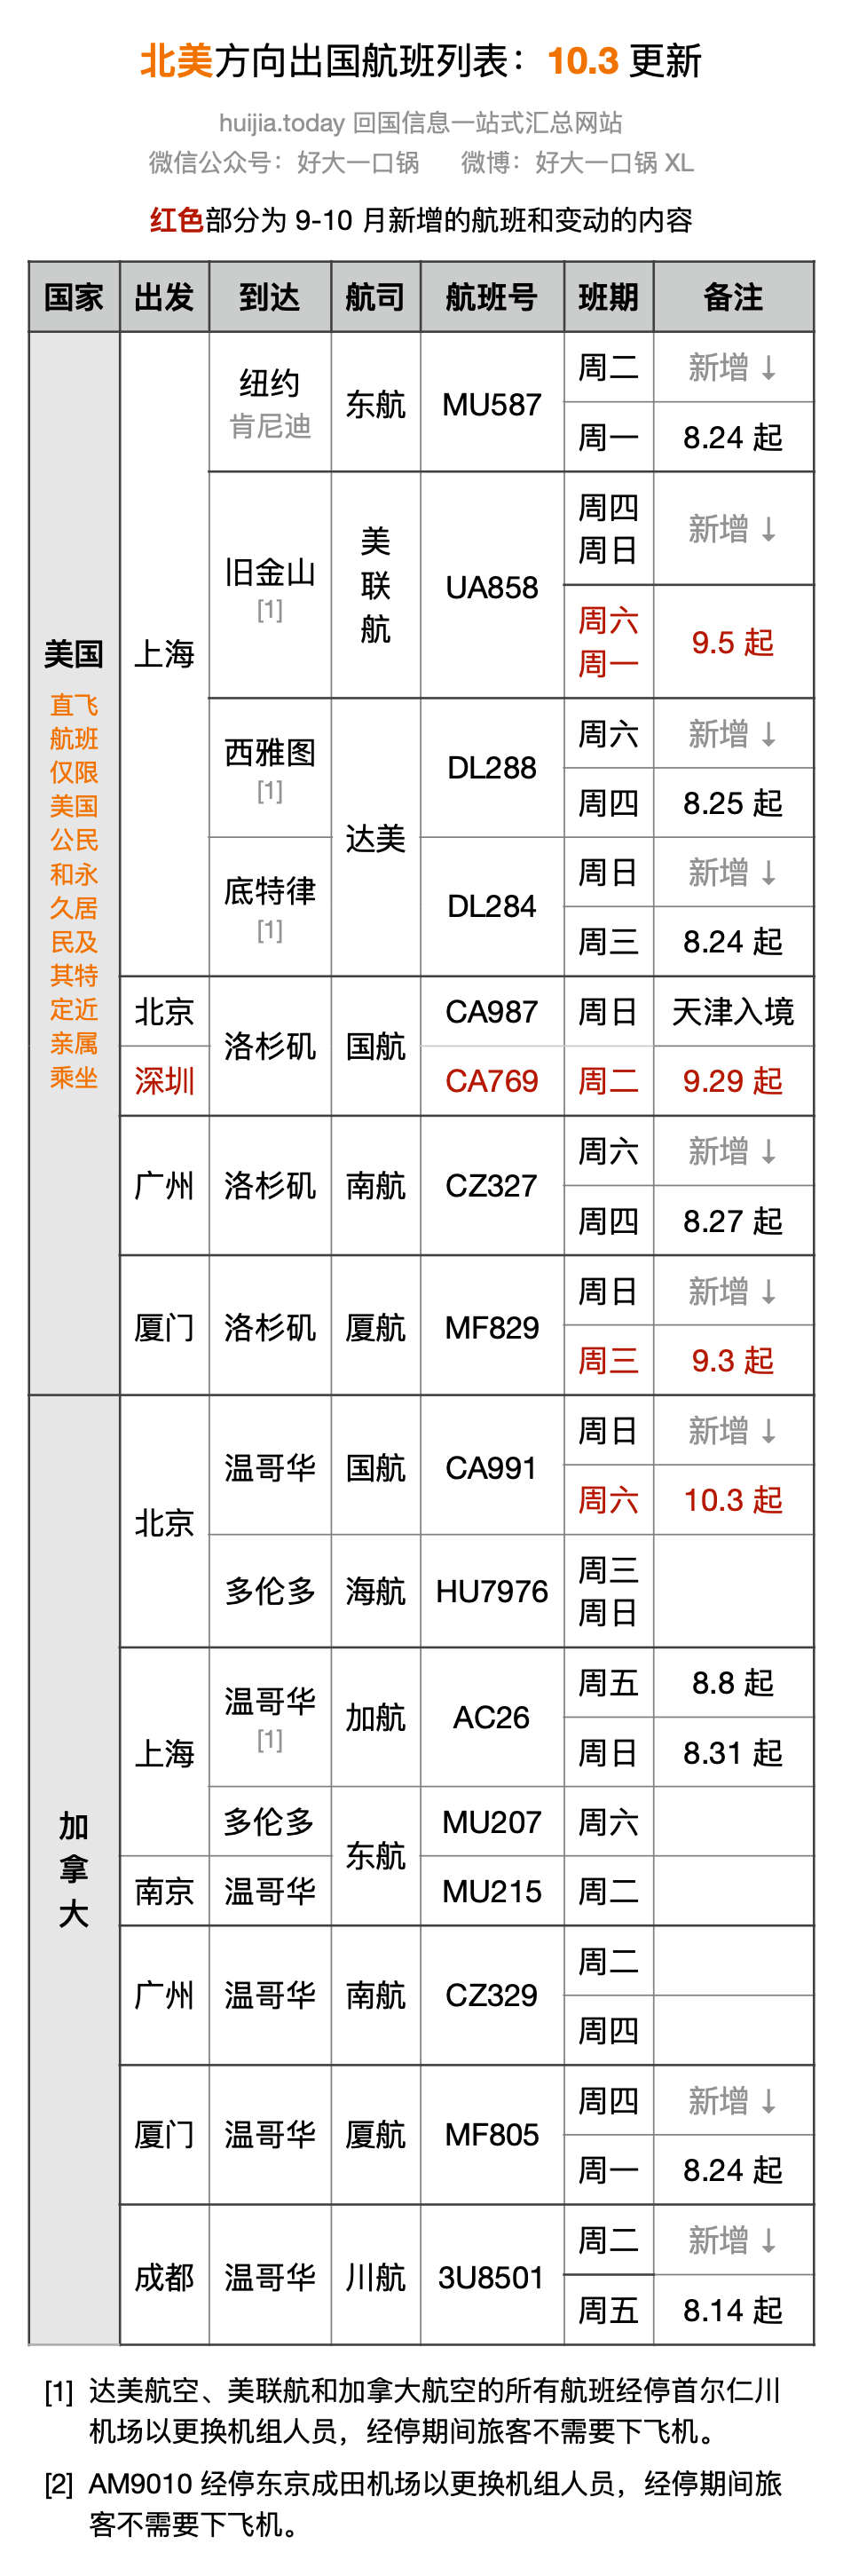 出国航班列表 1.png